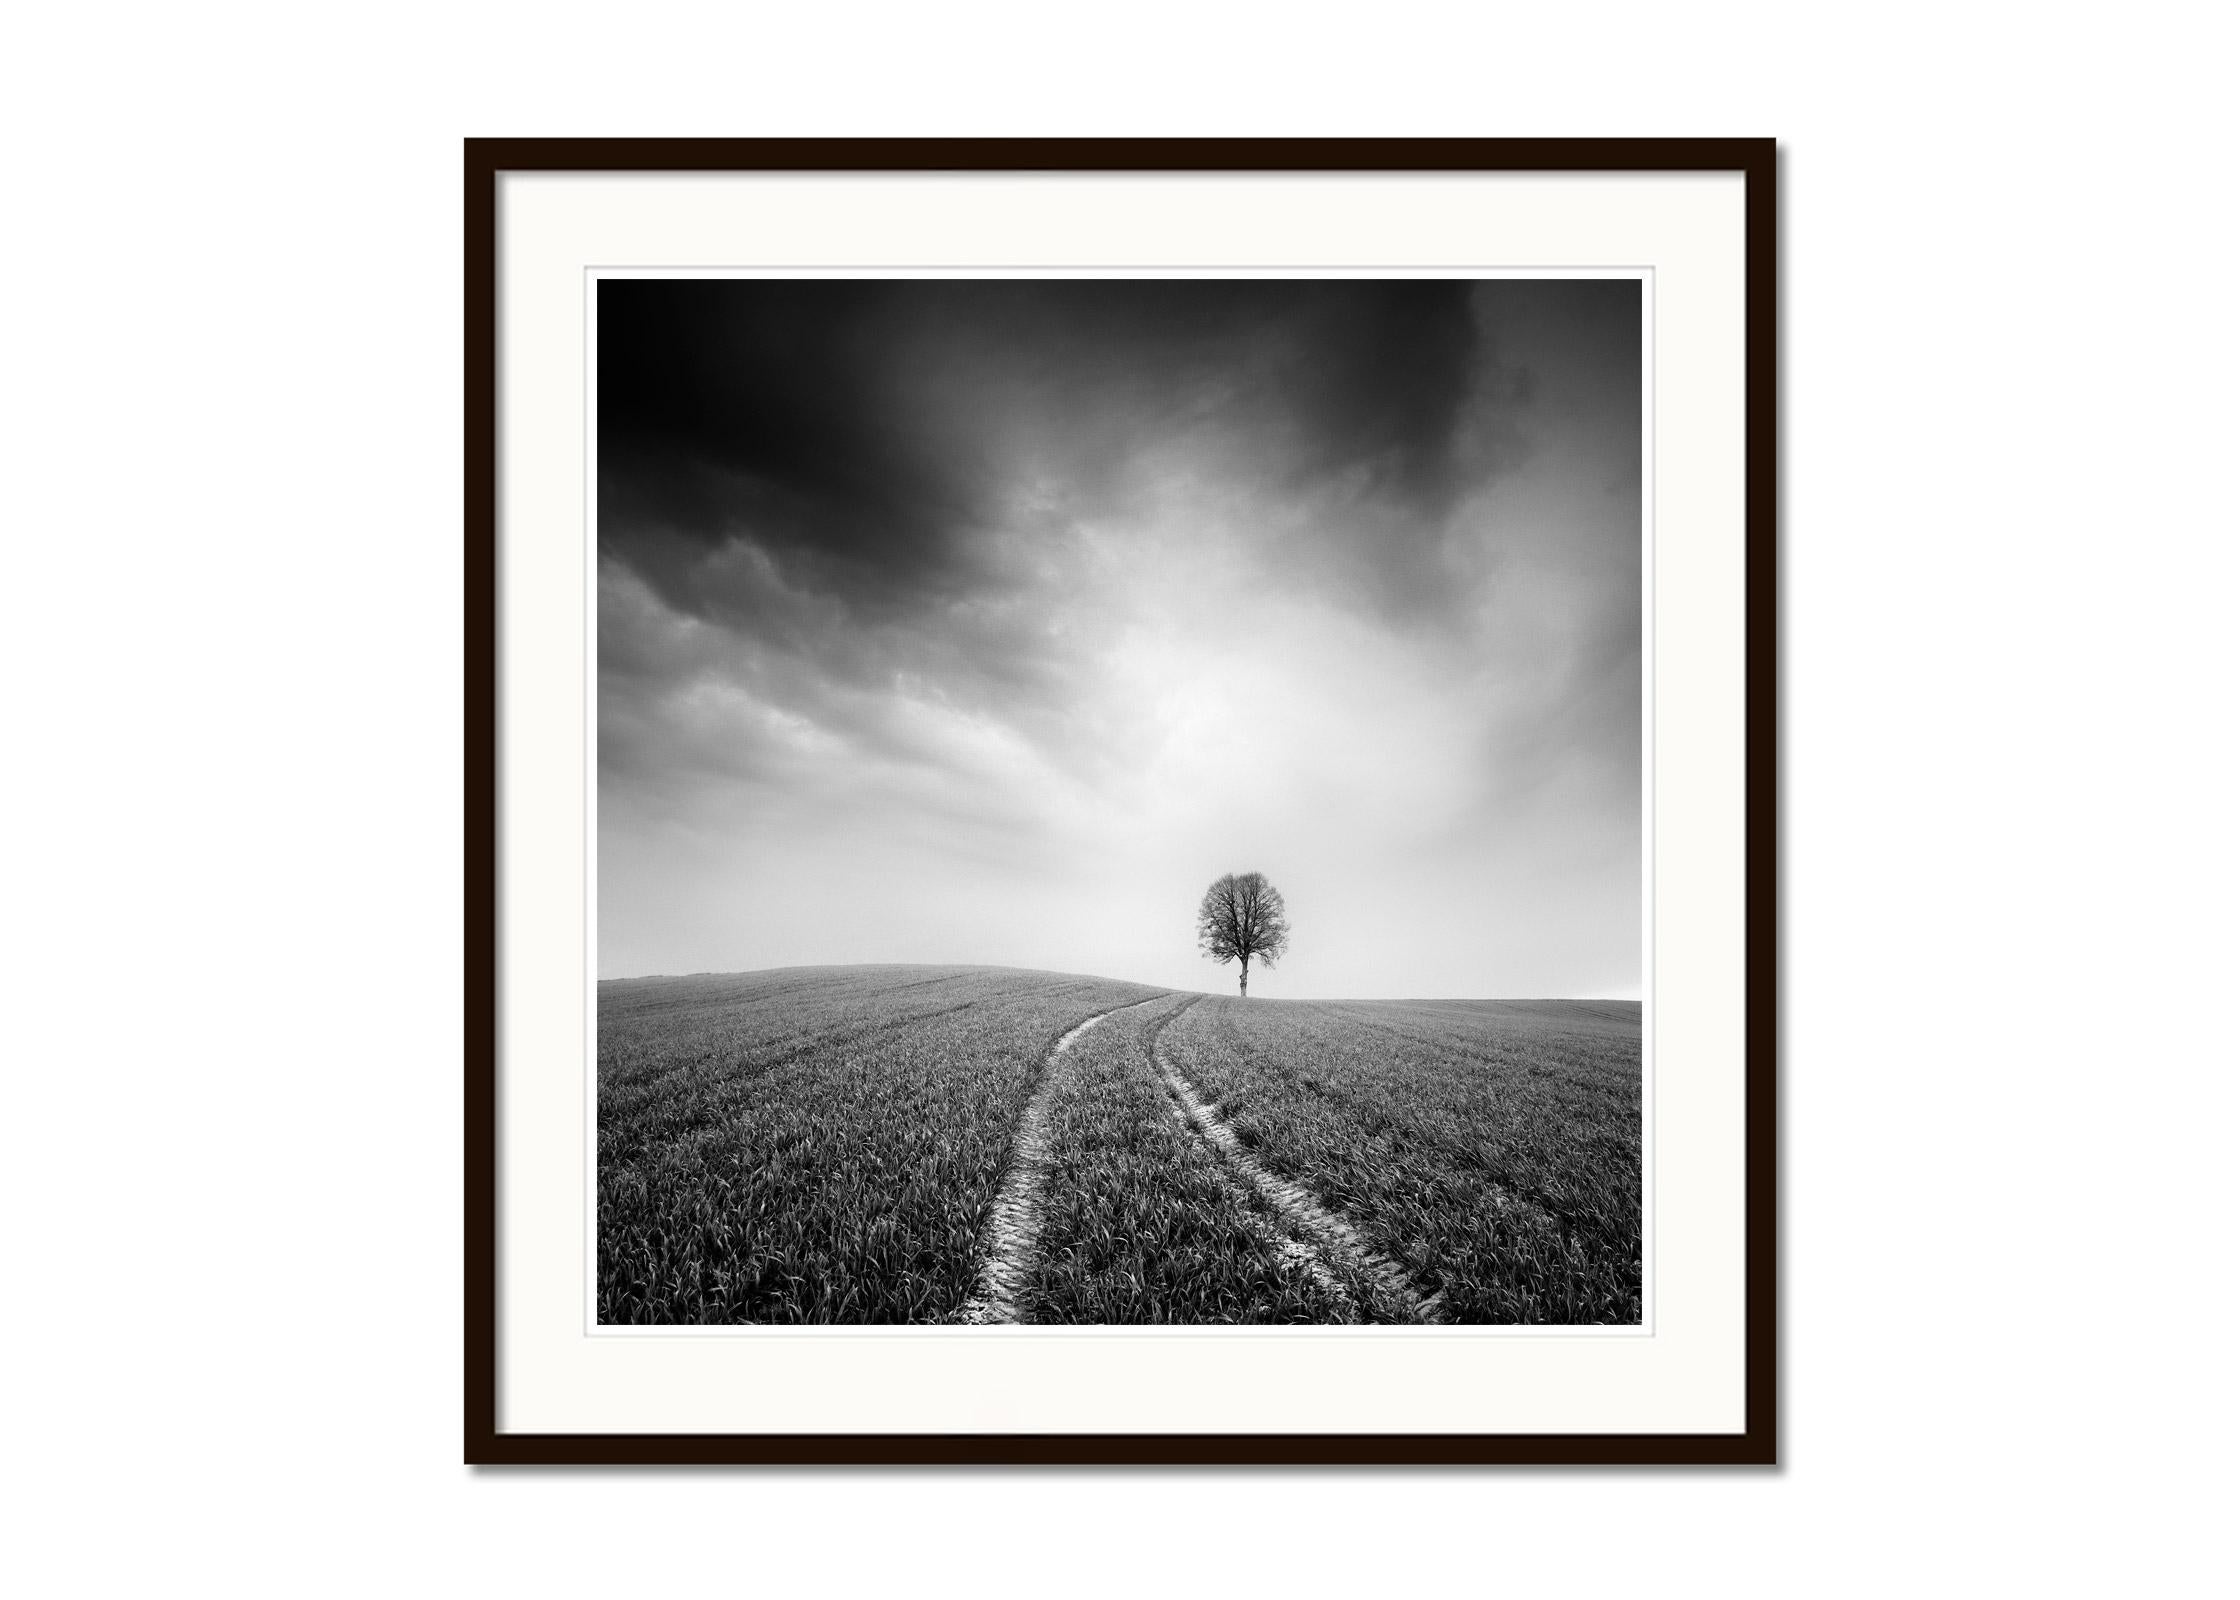 Bauernhof, ein einzelner Baum, minimalistische schwarz-weiße Kunst-Landschaftsfotografie (Grau), Landscape Print, von Gerald Berghammer